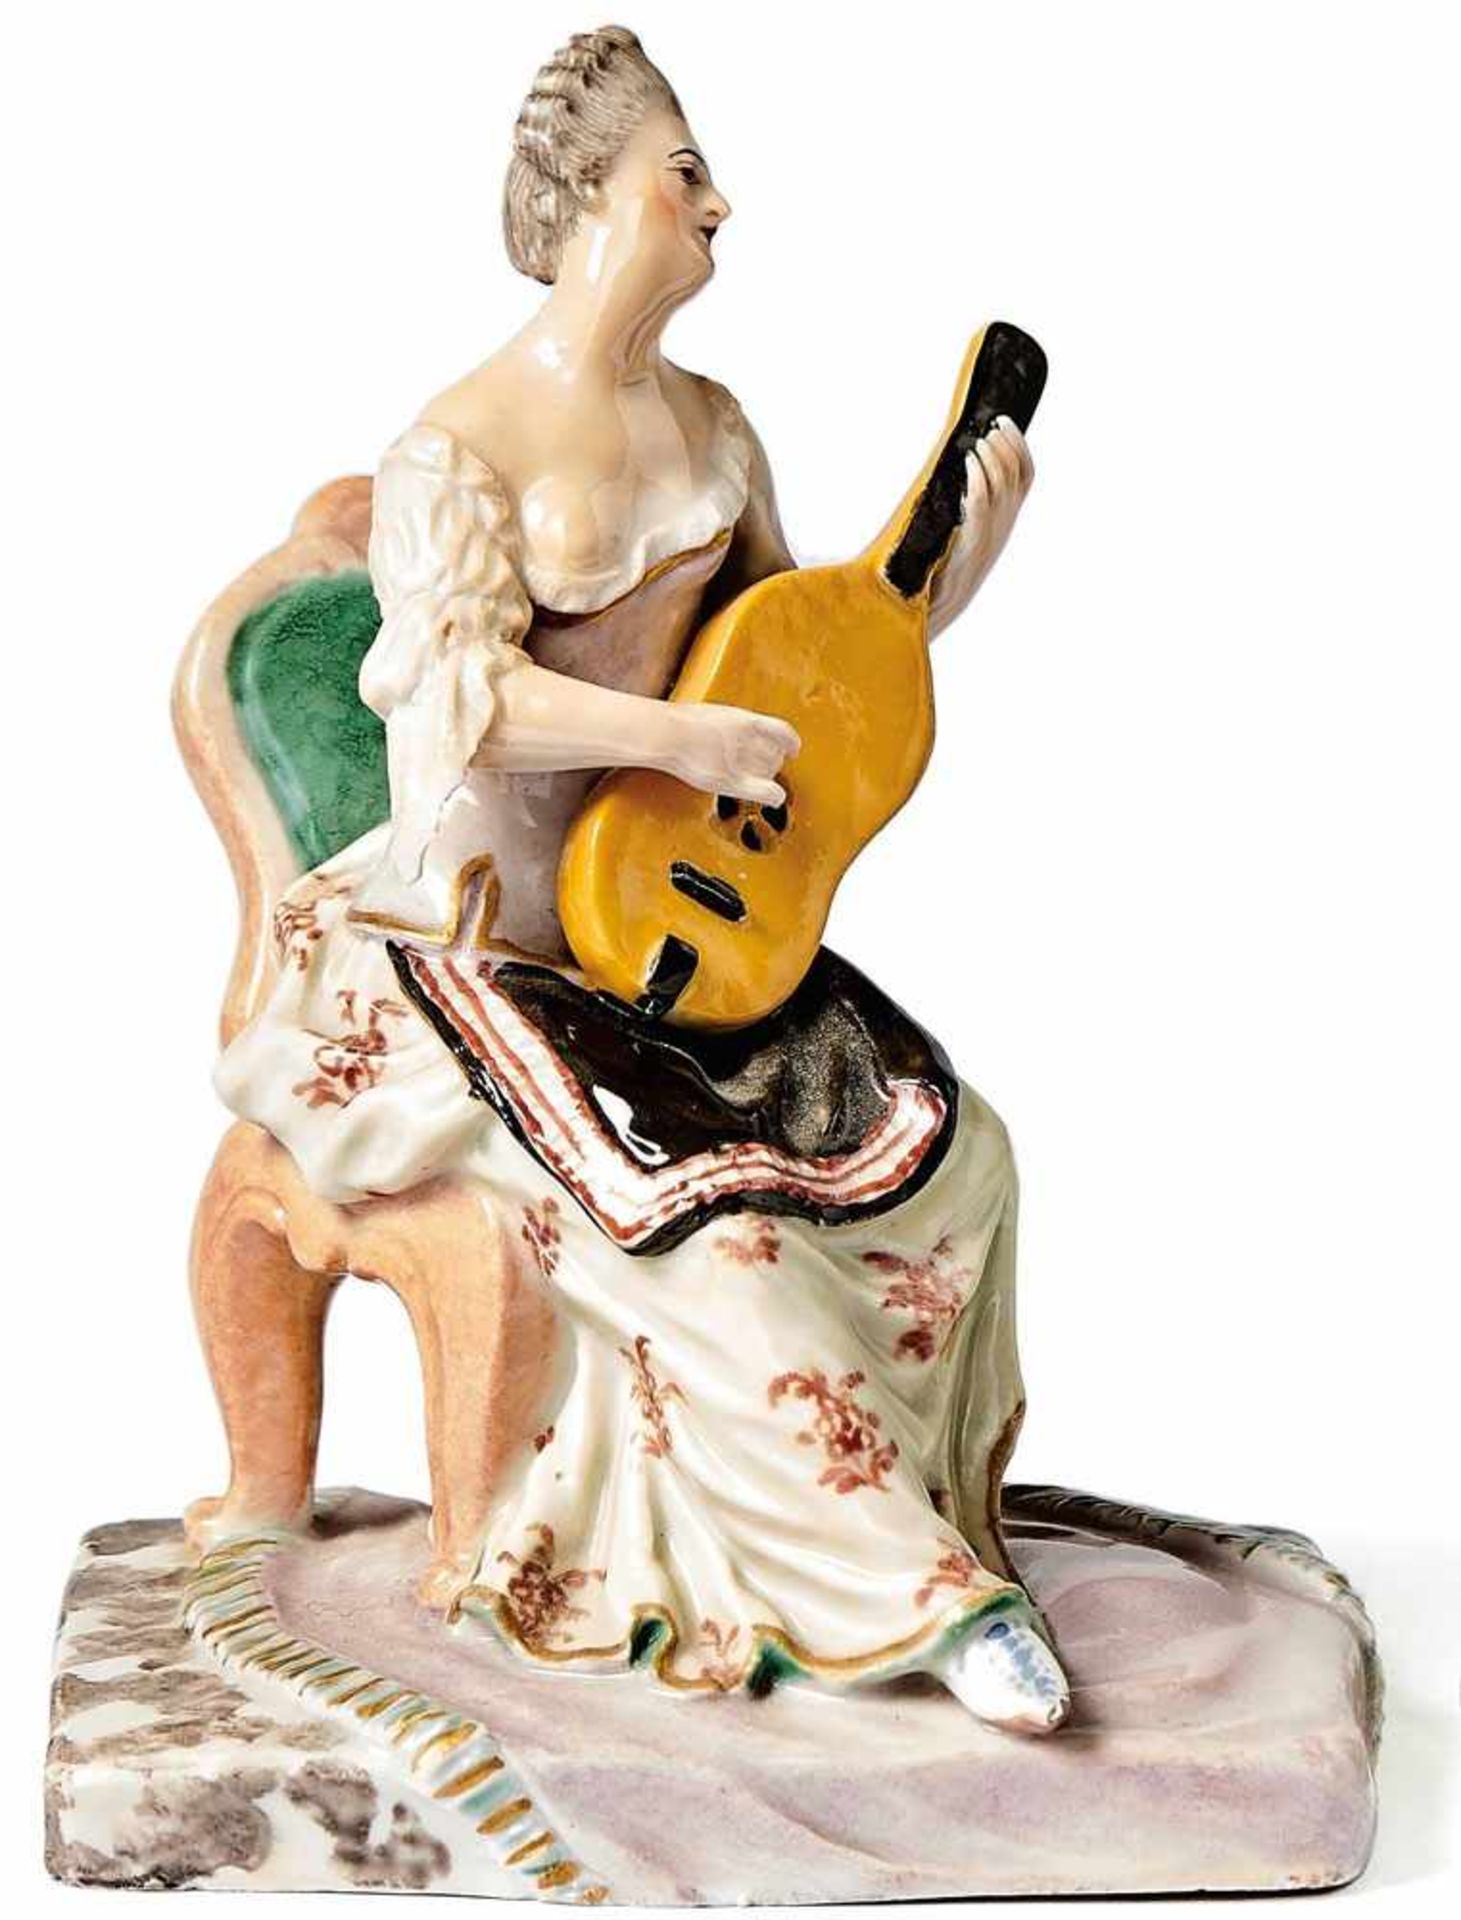 GitarrenspielerinLudwigsburg, um 1765Entwurf Joseph Nees, 1764/67. Auf rechteckigem Sockel mit